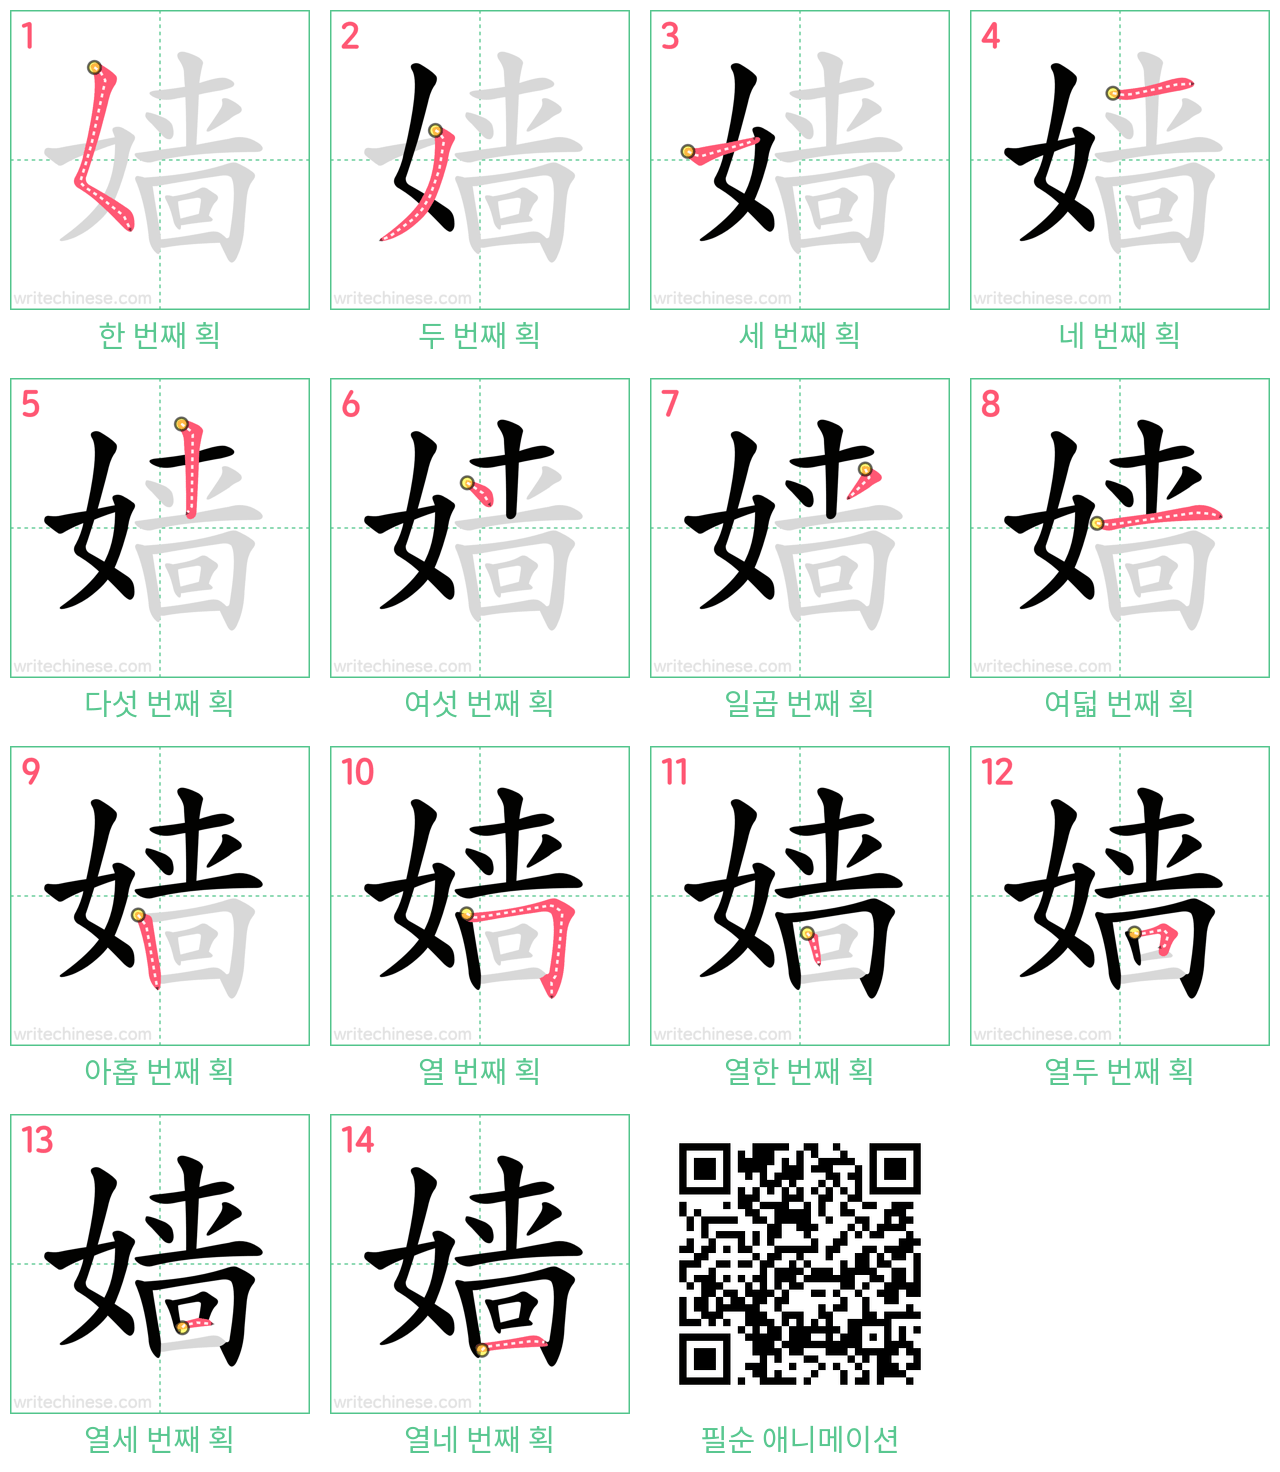 嫱 step-by-step stroke order diagrams